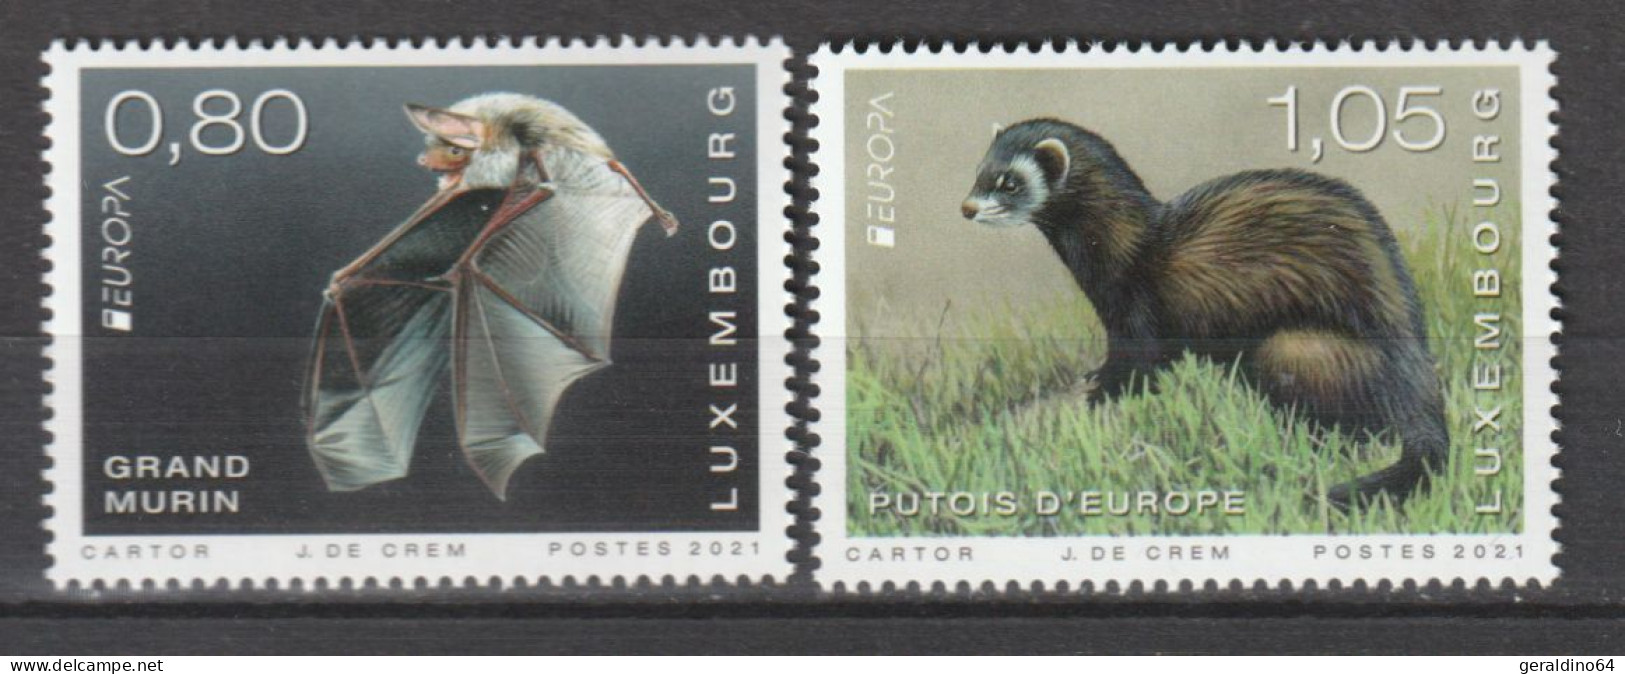 Luxemburg 2021 Europa Cept Gefährdete Tierarten Mi 2264 + 2265 ** Postfrisch MNH - Unused Stamps